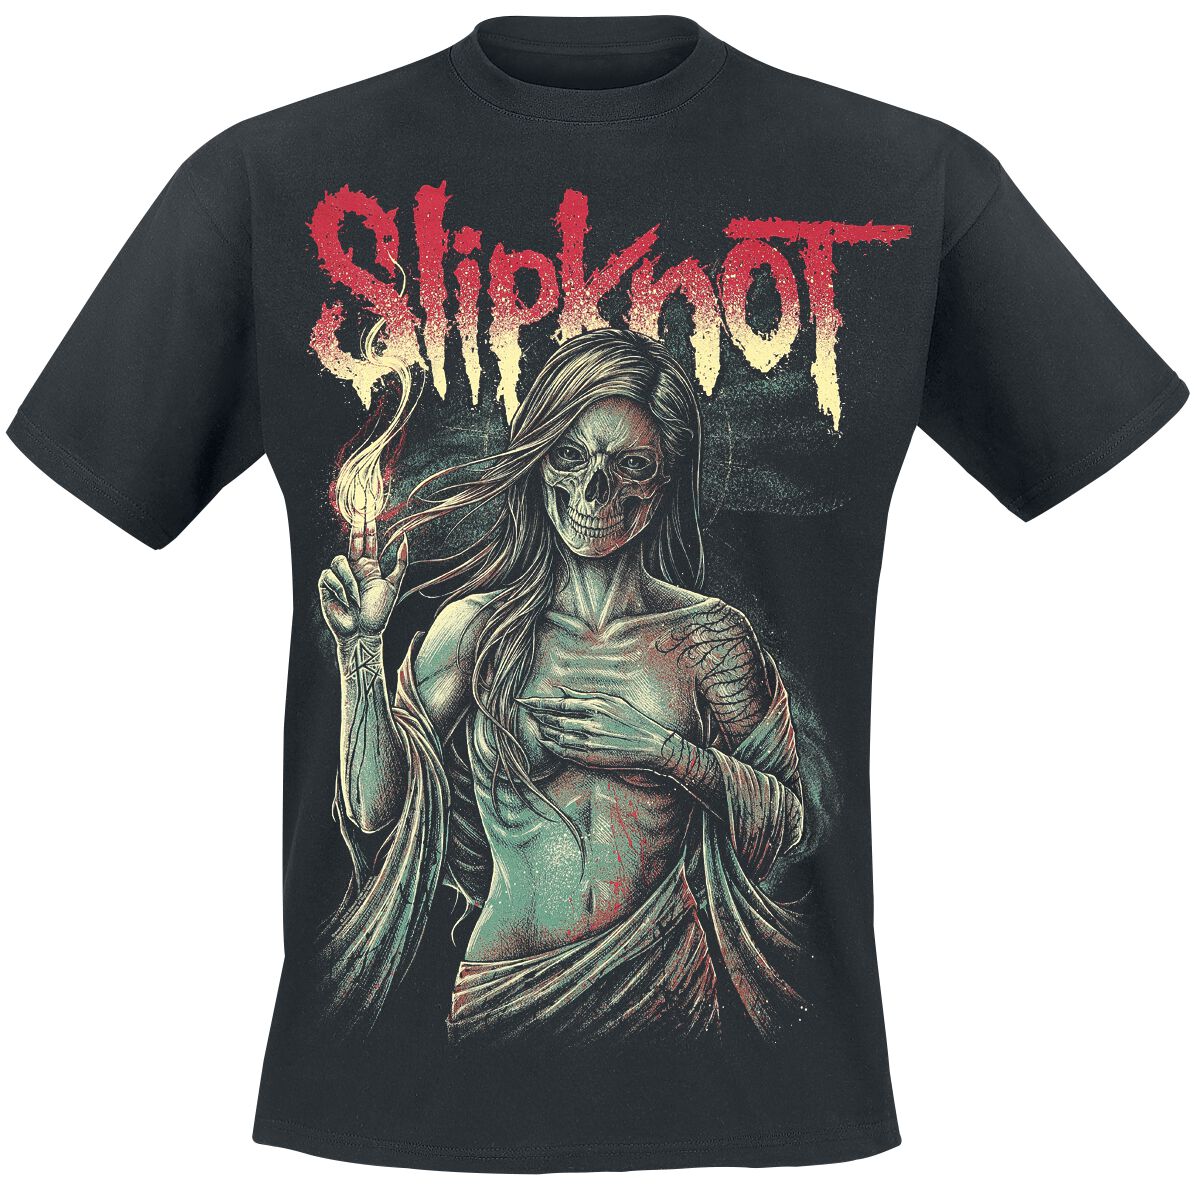 Slipknot T-Shirt - Burn Me Away - S bis 4XL - für Männer - Größe S - schwarz  - Lizenziertes Merchandise!